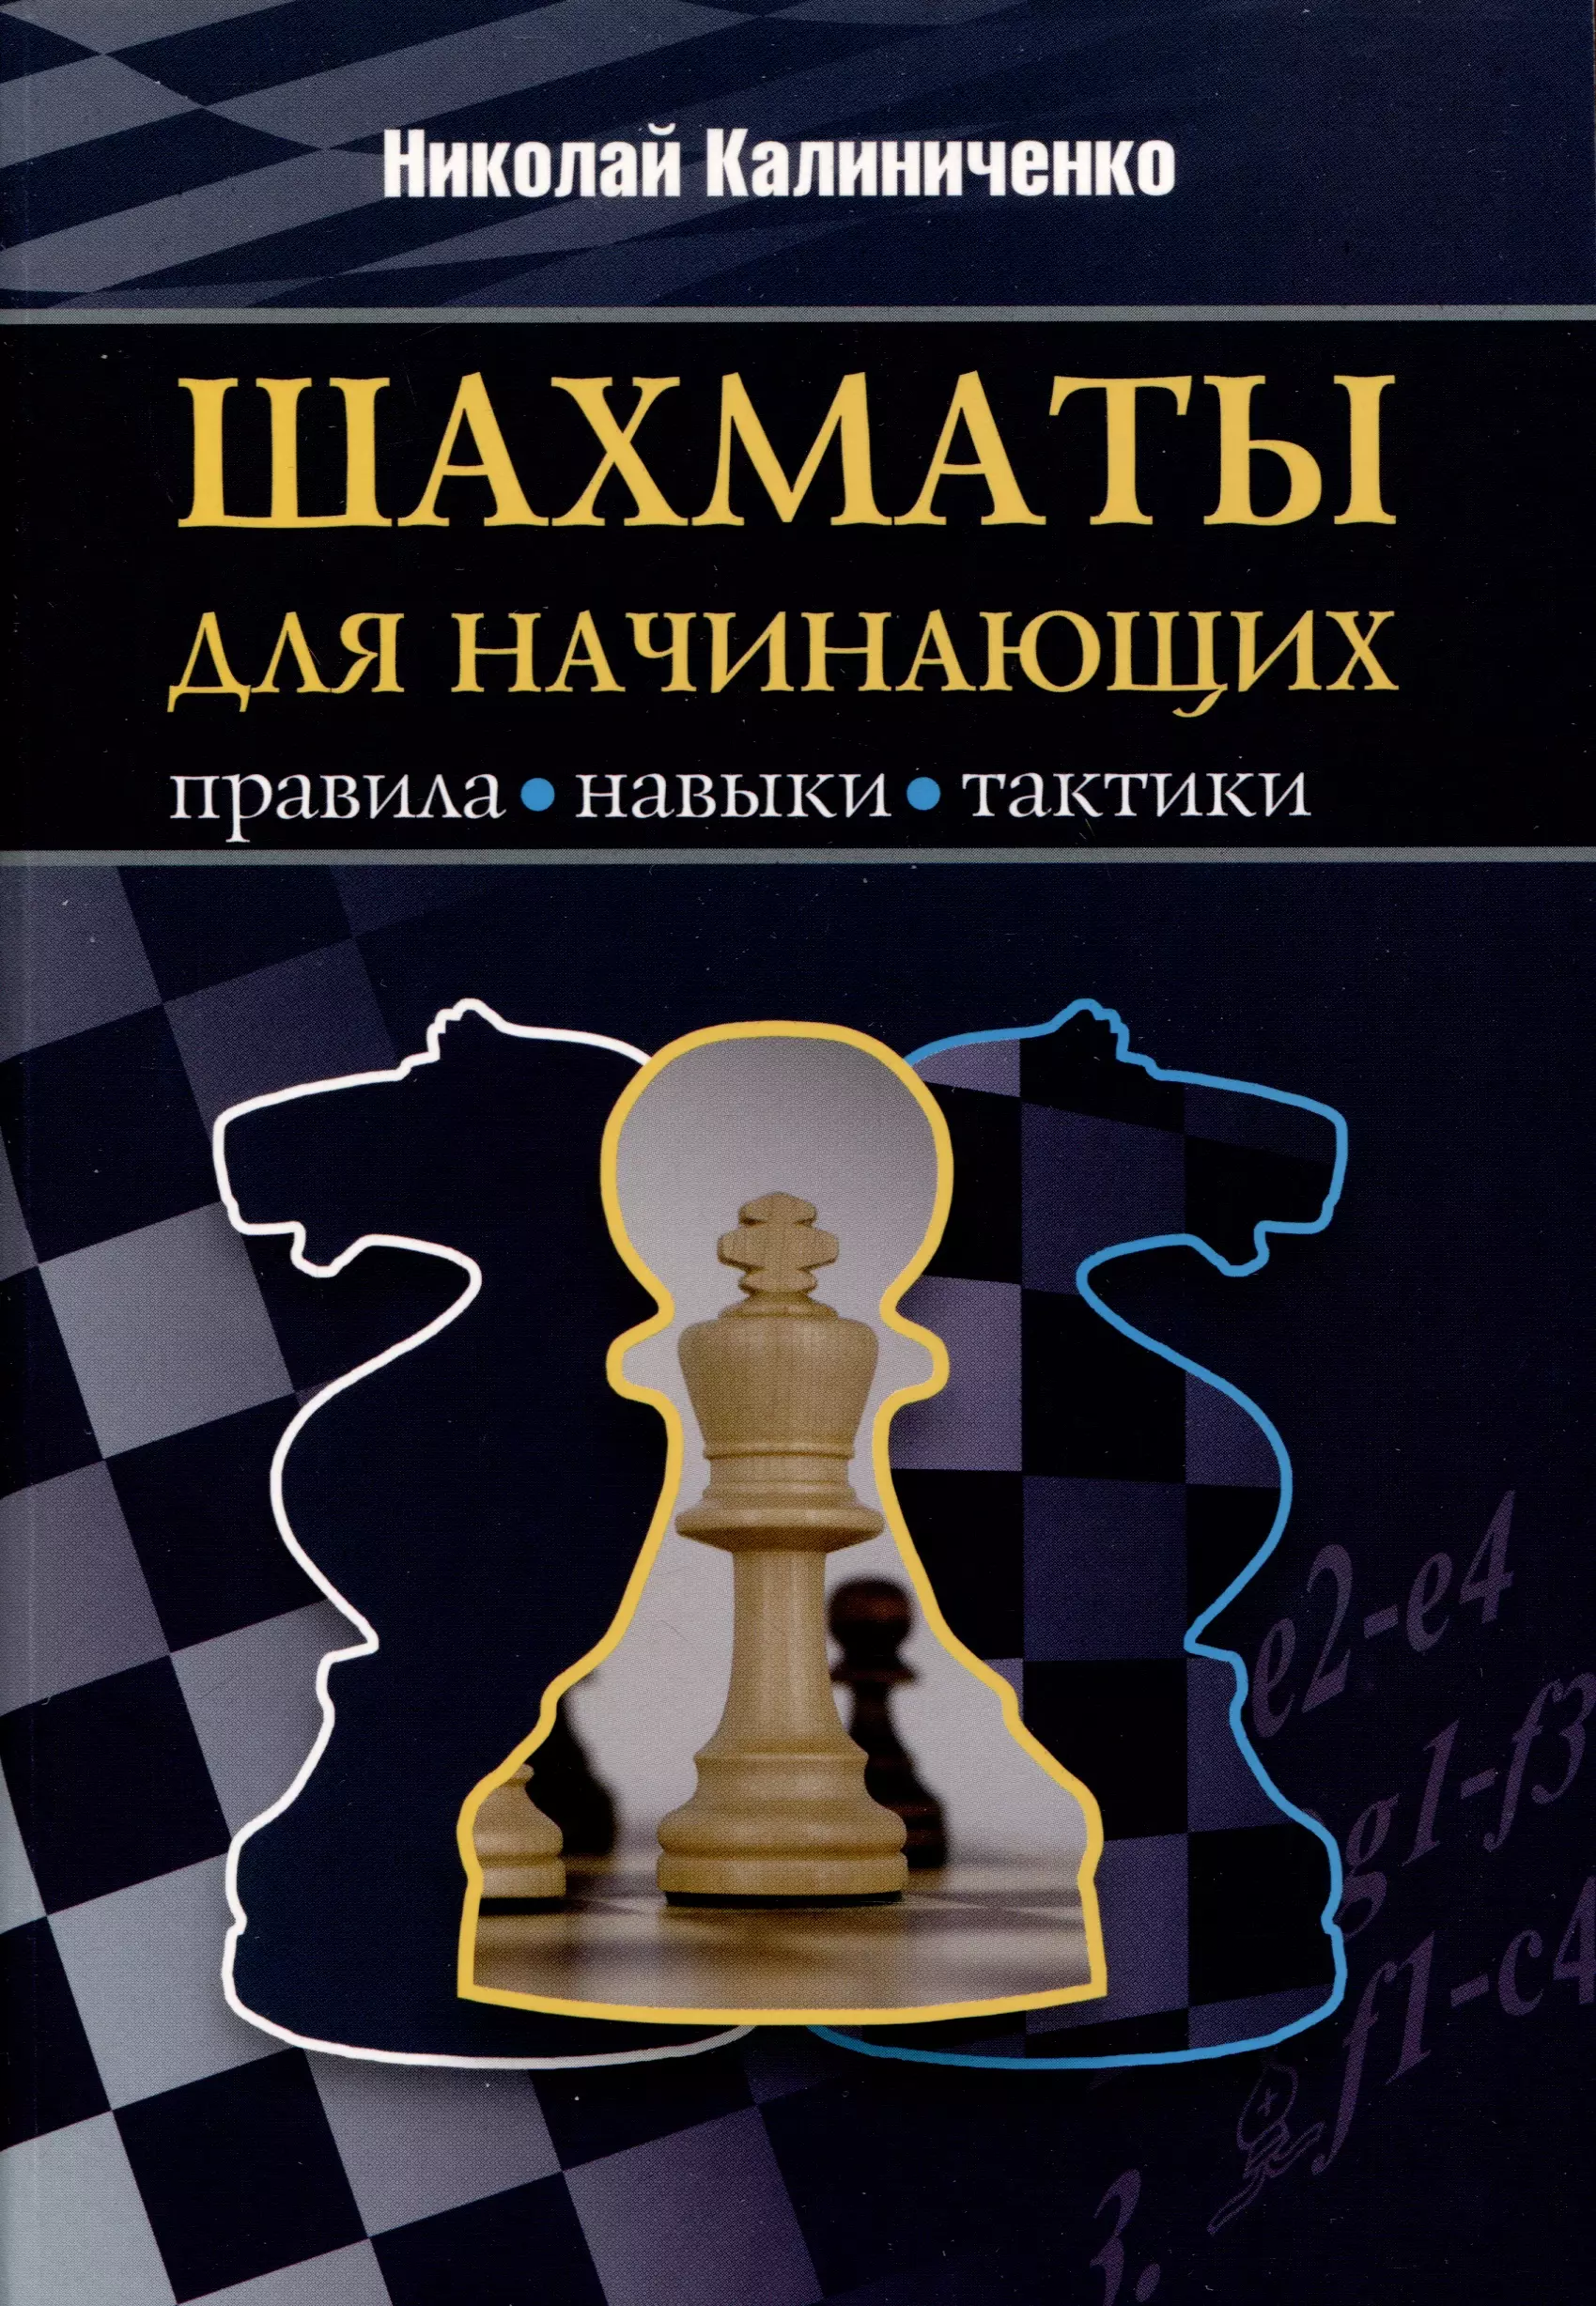 Шахматы для начинающих. Правила, навыки, тактики пилихин а шахматы для начинающих